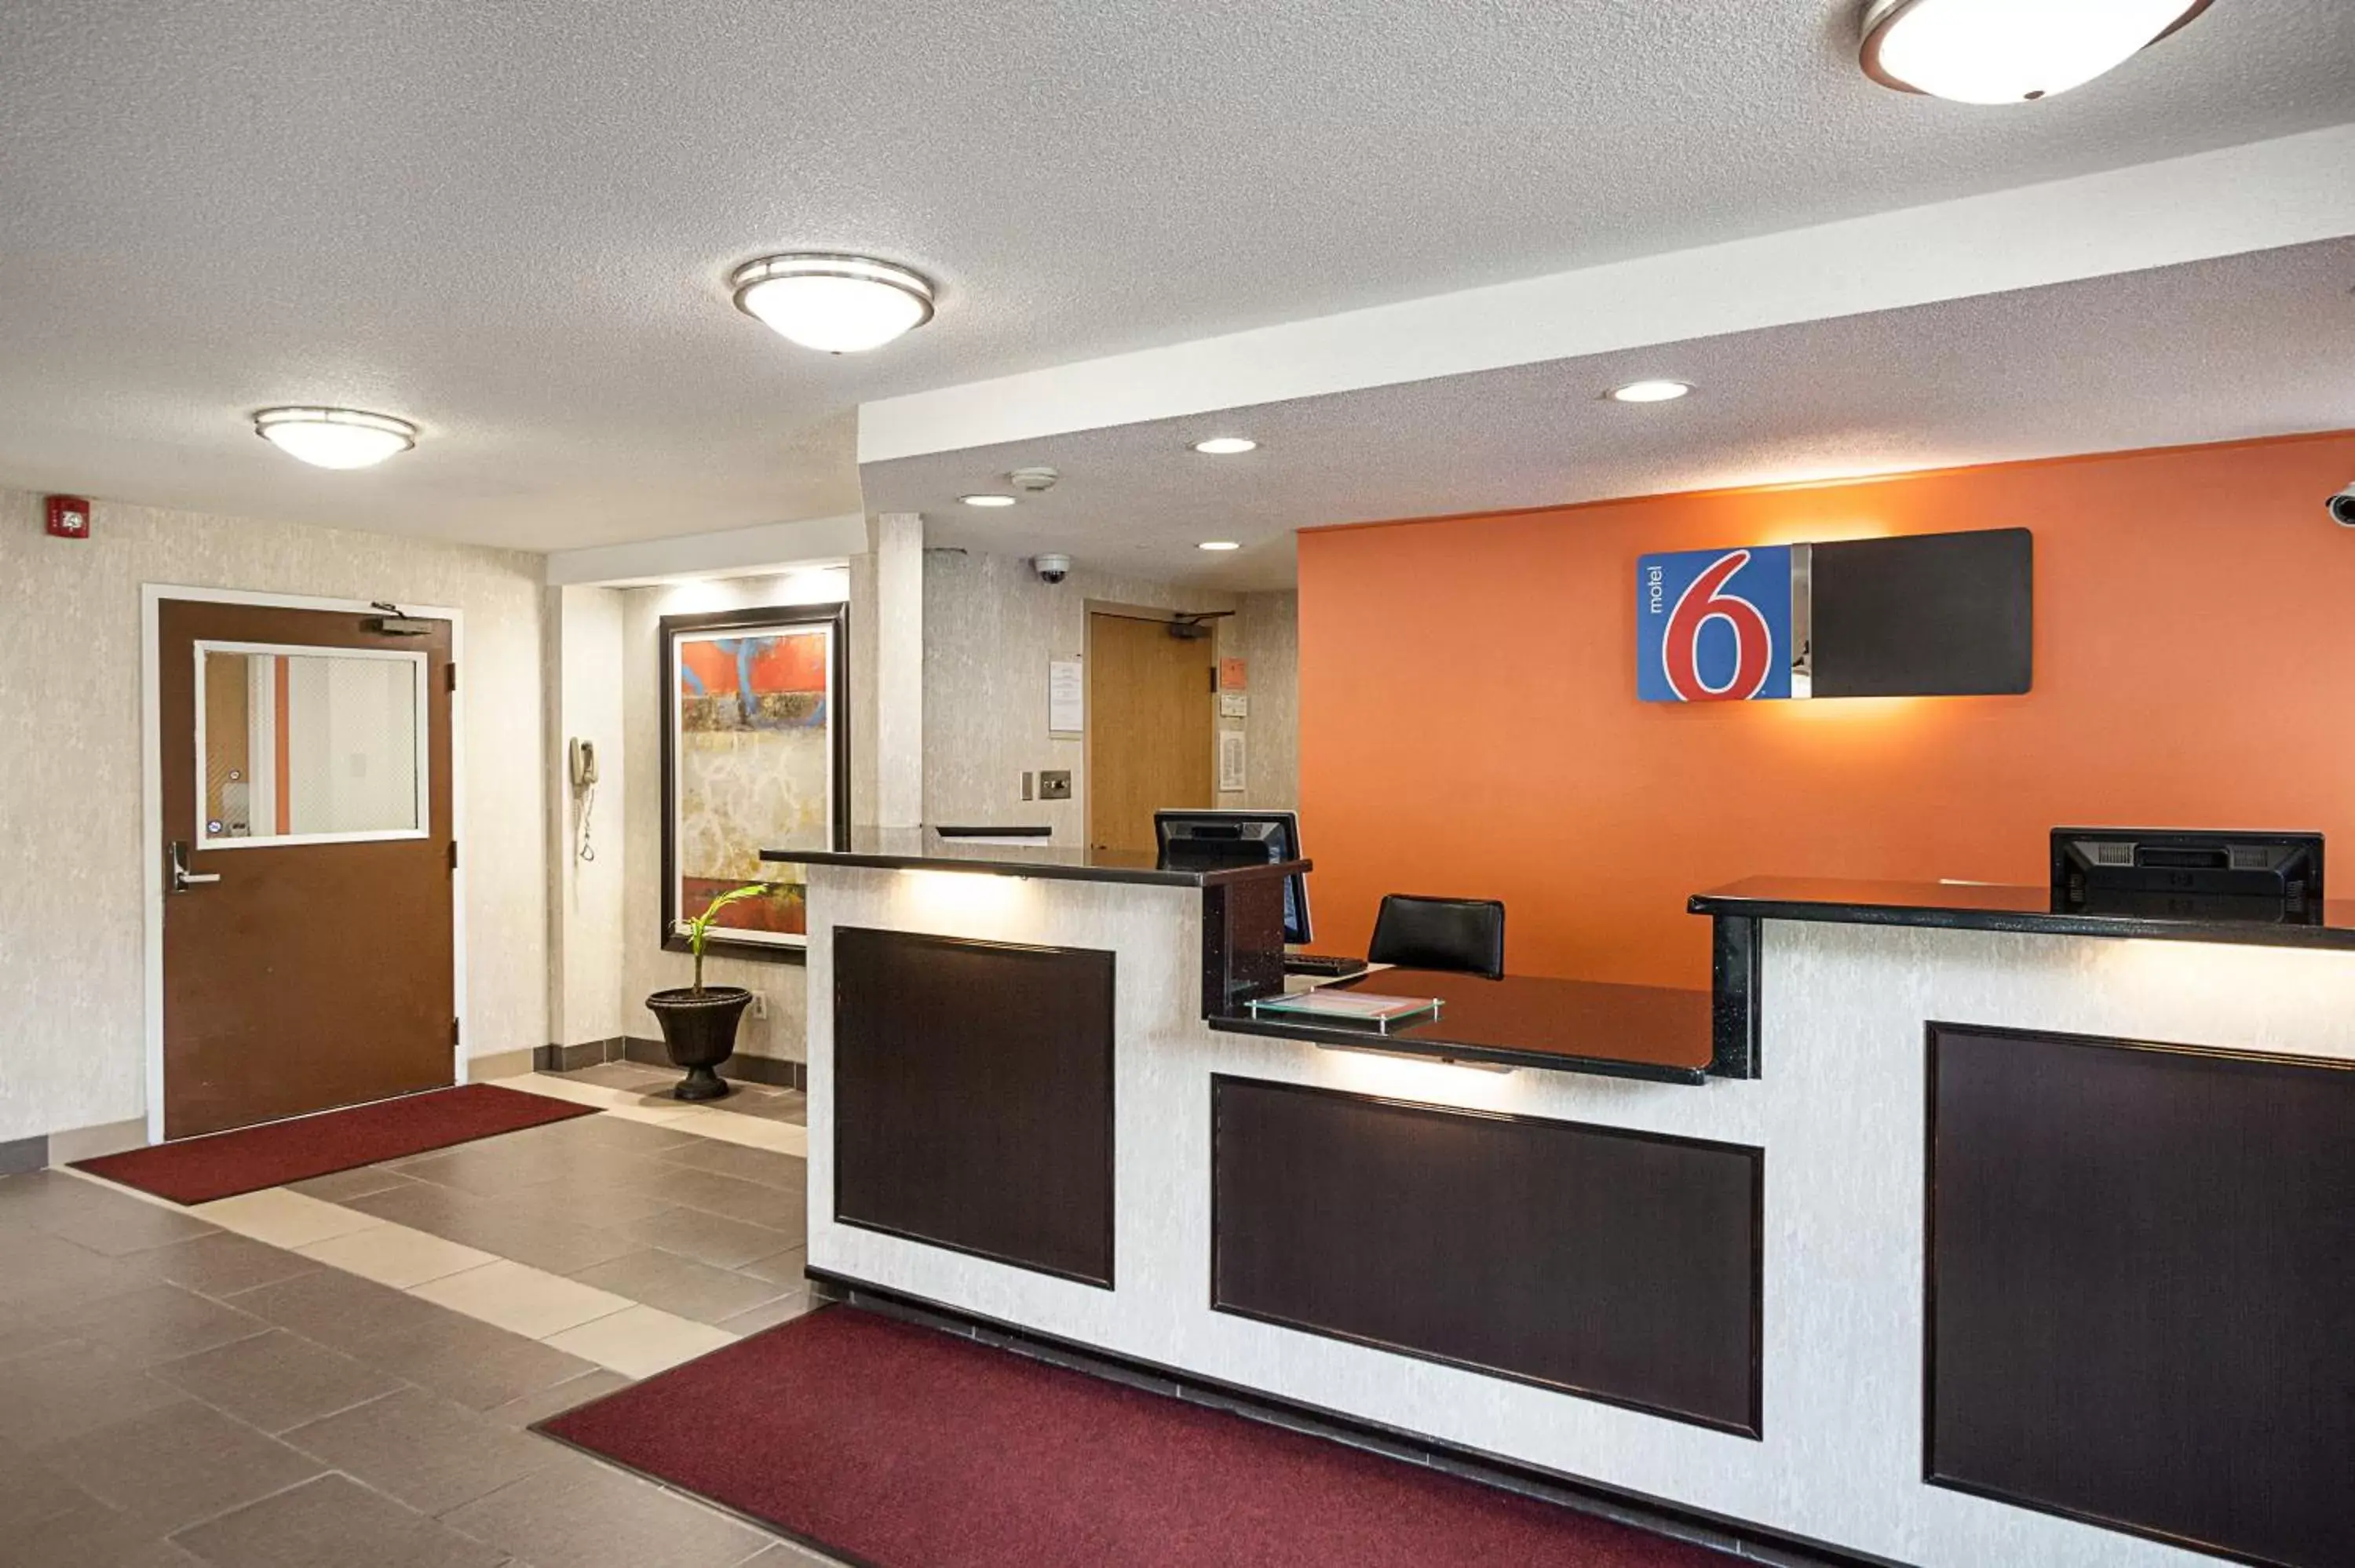 Lobby or reception, Lobby/Reception in Motel 6-Binghamton, NY